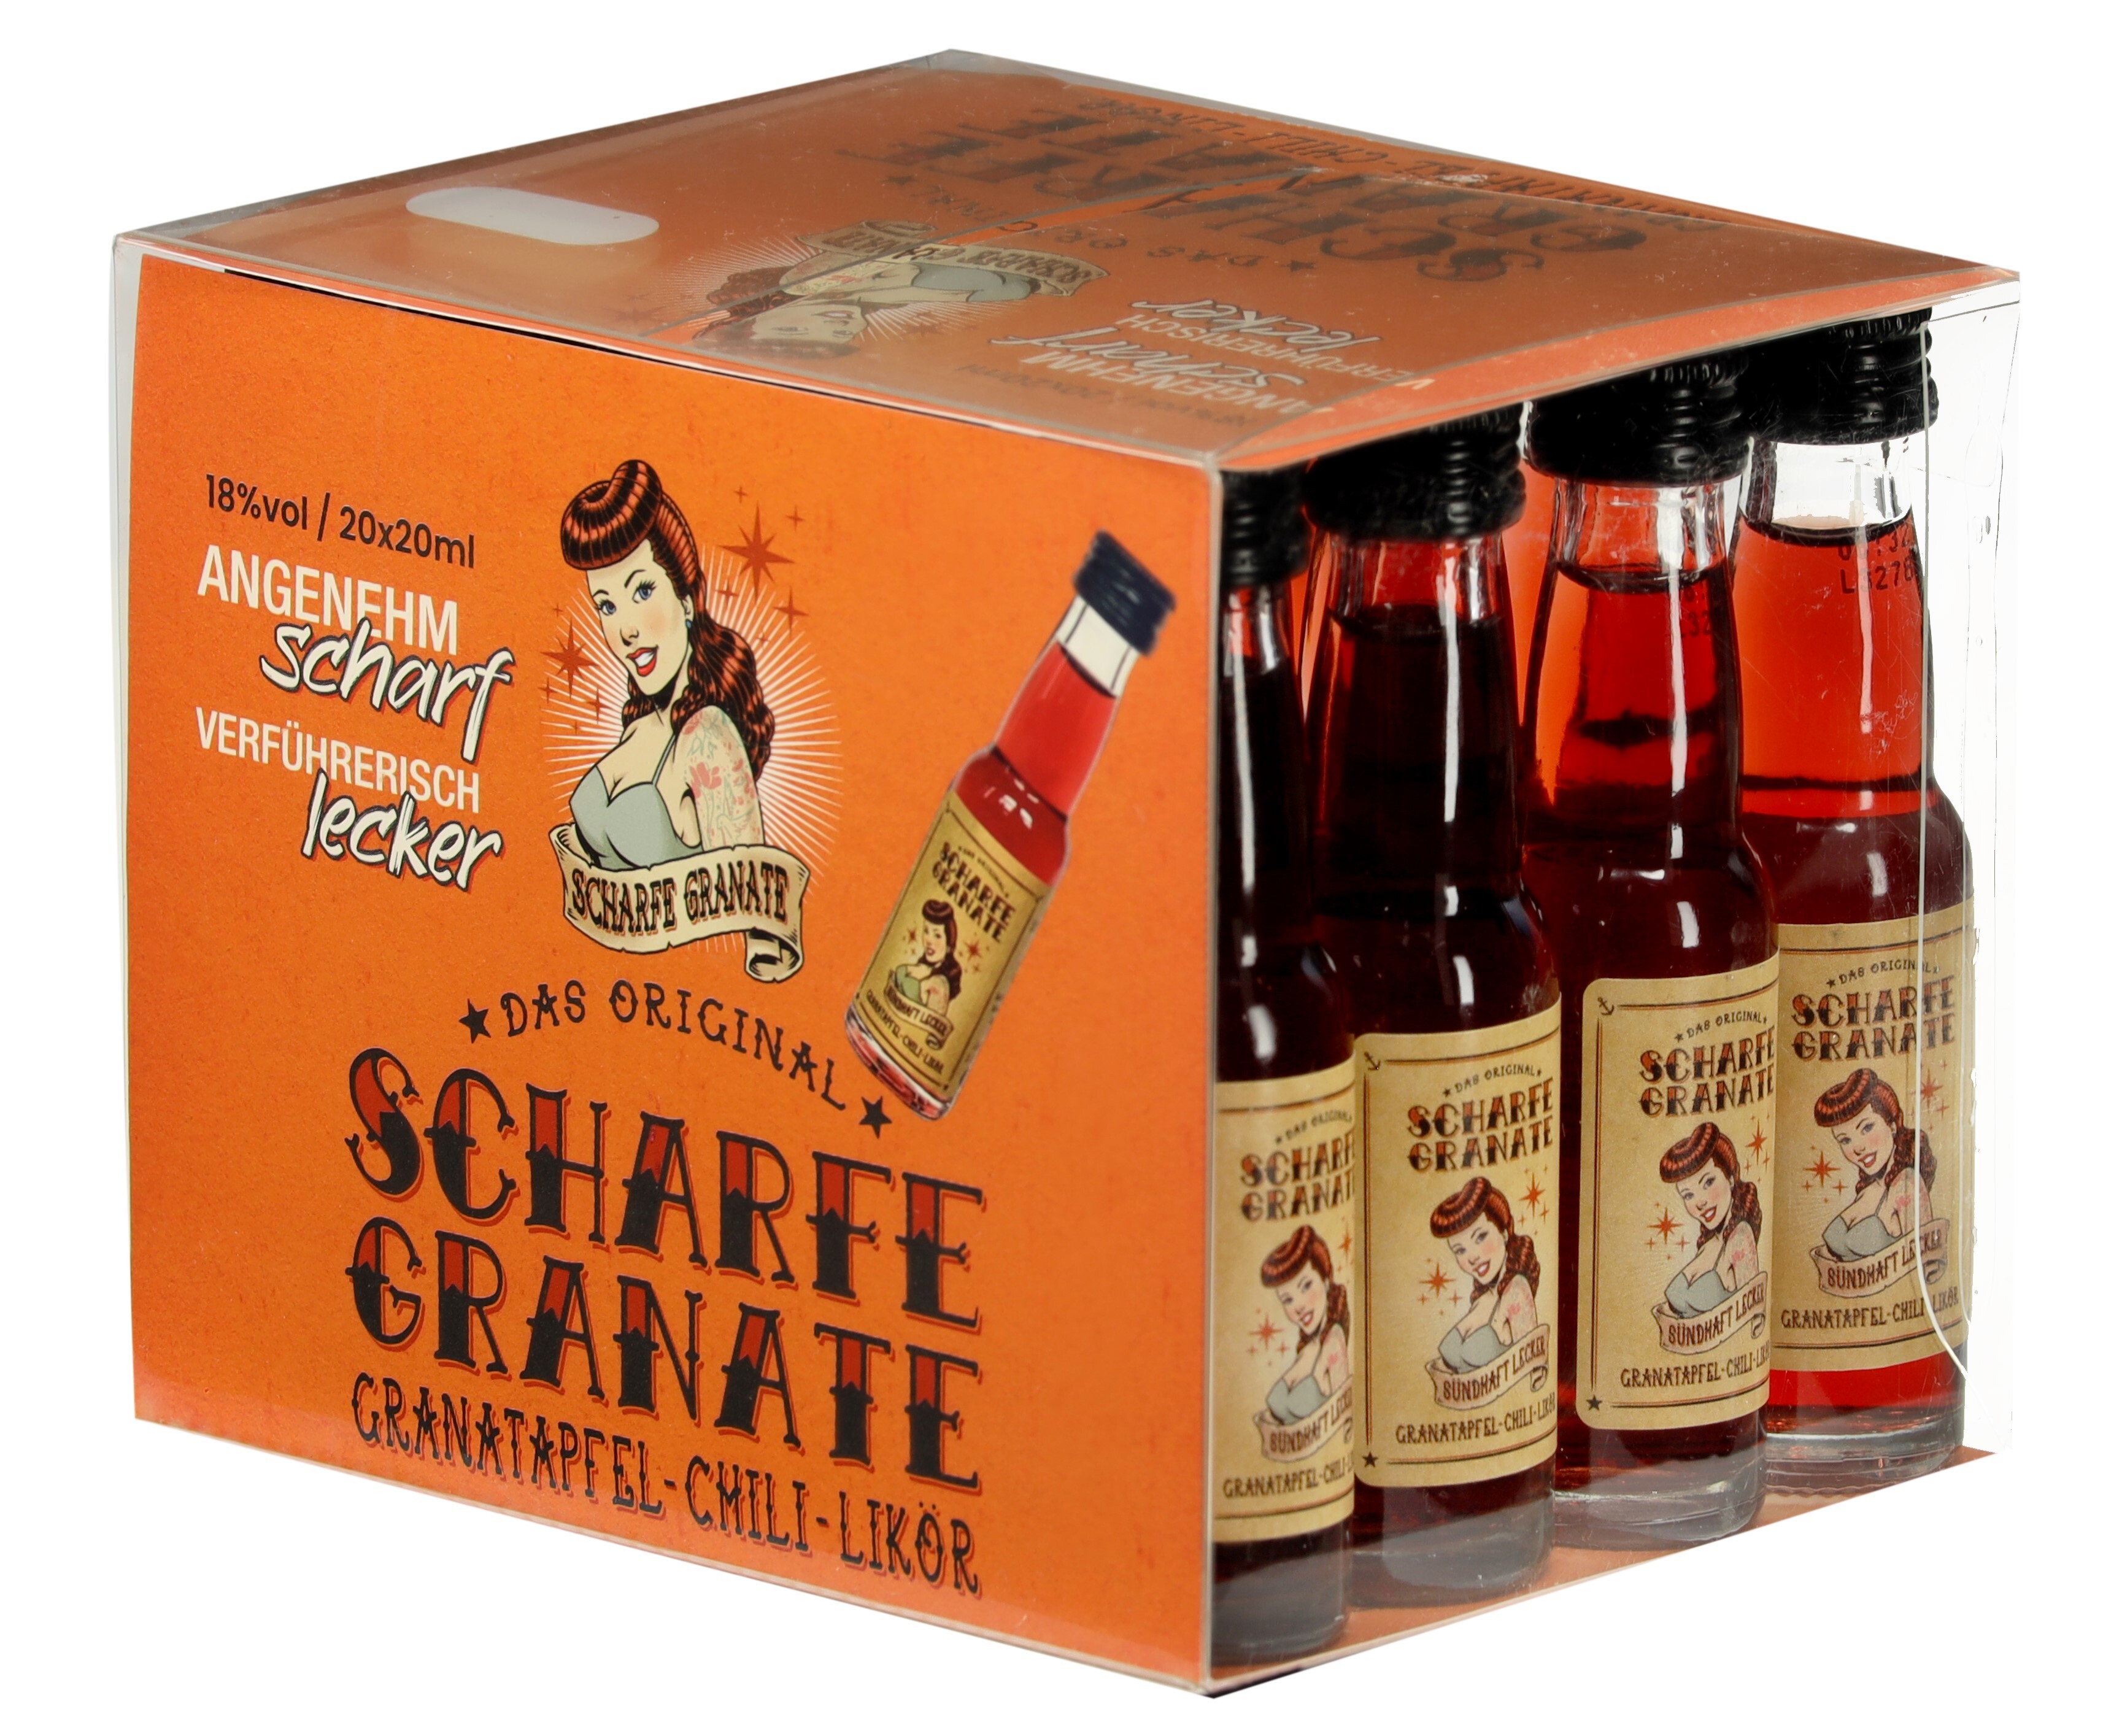 Paket [20 x 0,02L] Scharfe Granate Granatapfel Chili Likör - 0,4L 18% vol